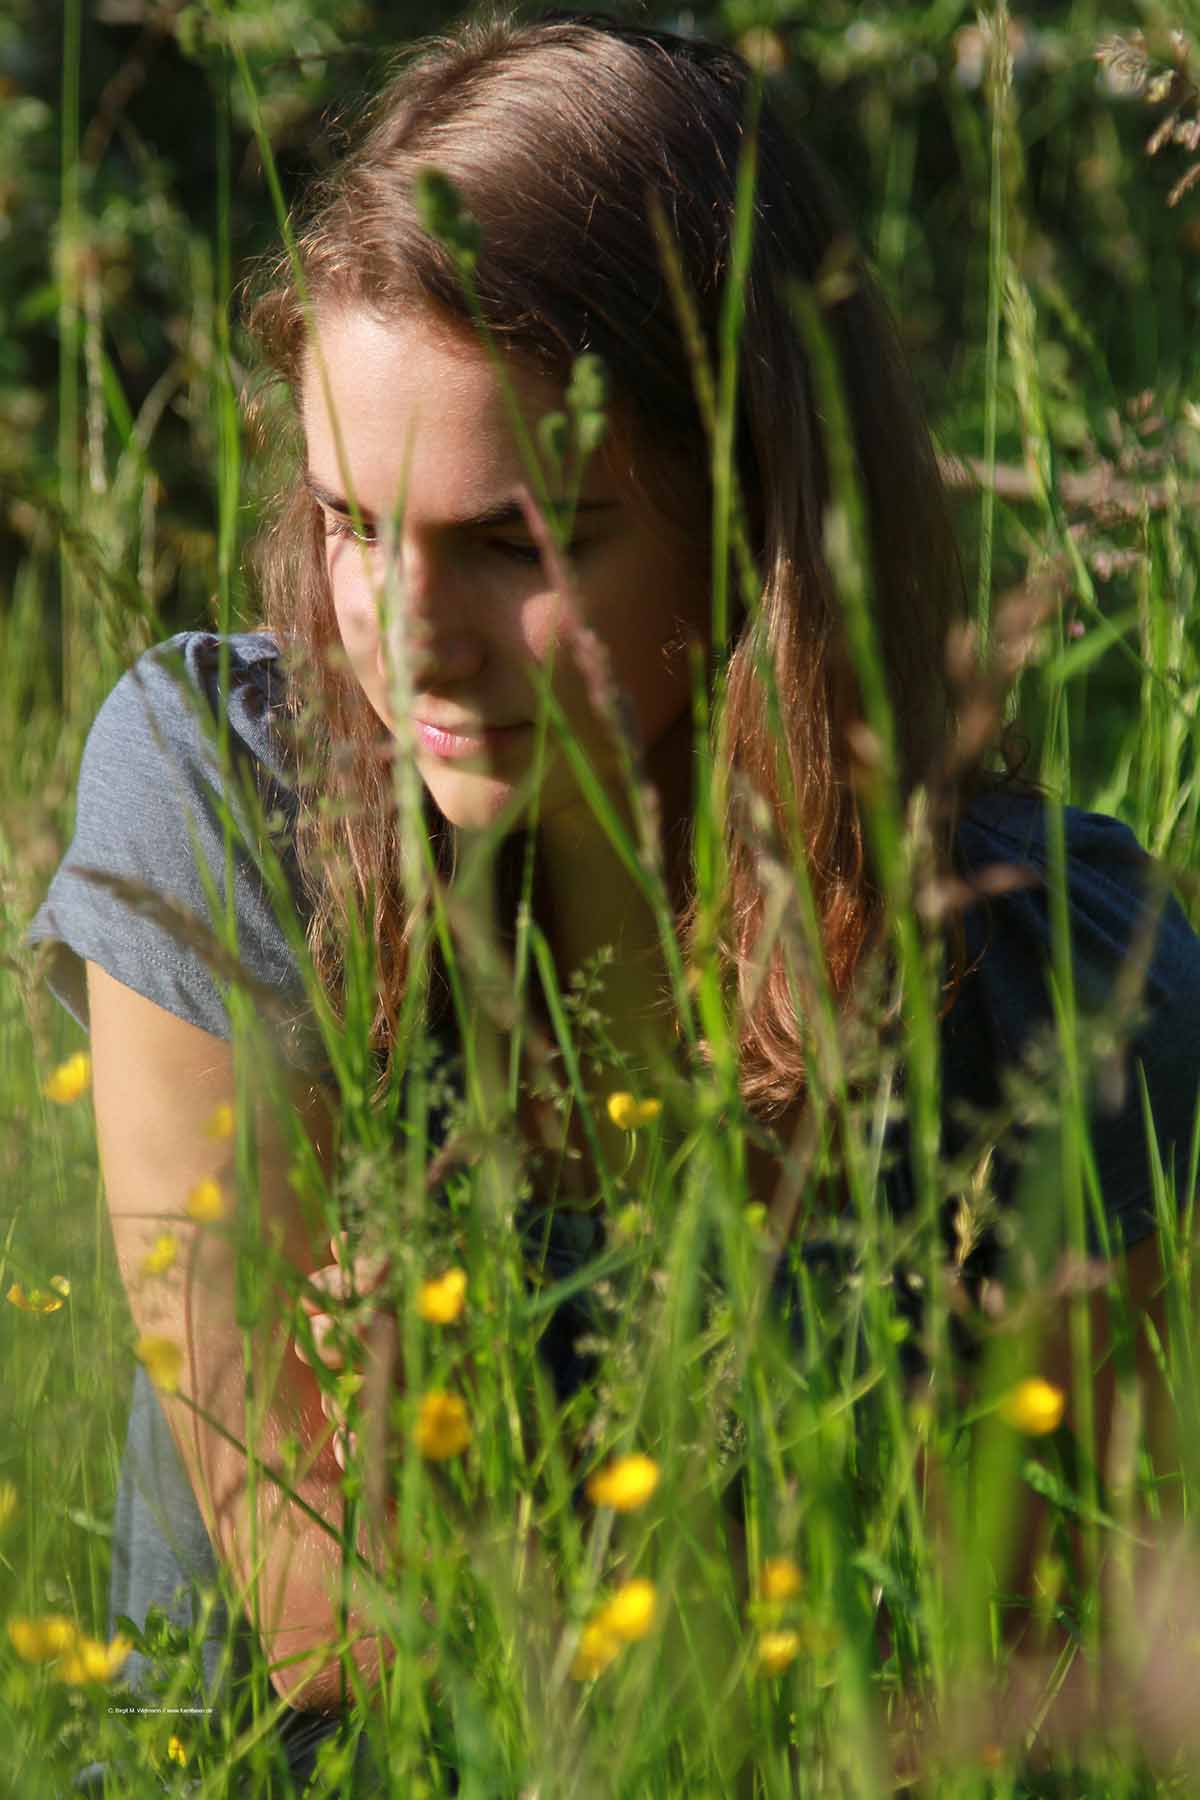 Fotoshooting in der Natur - Profilbilder mit Blumen und Gras als Styleelement